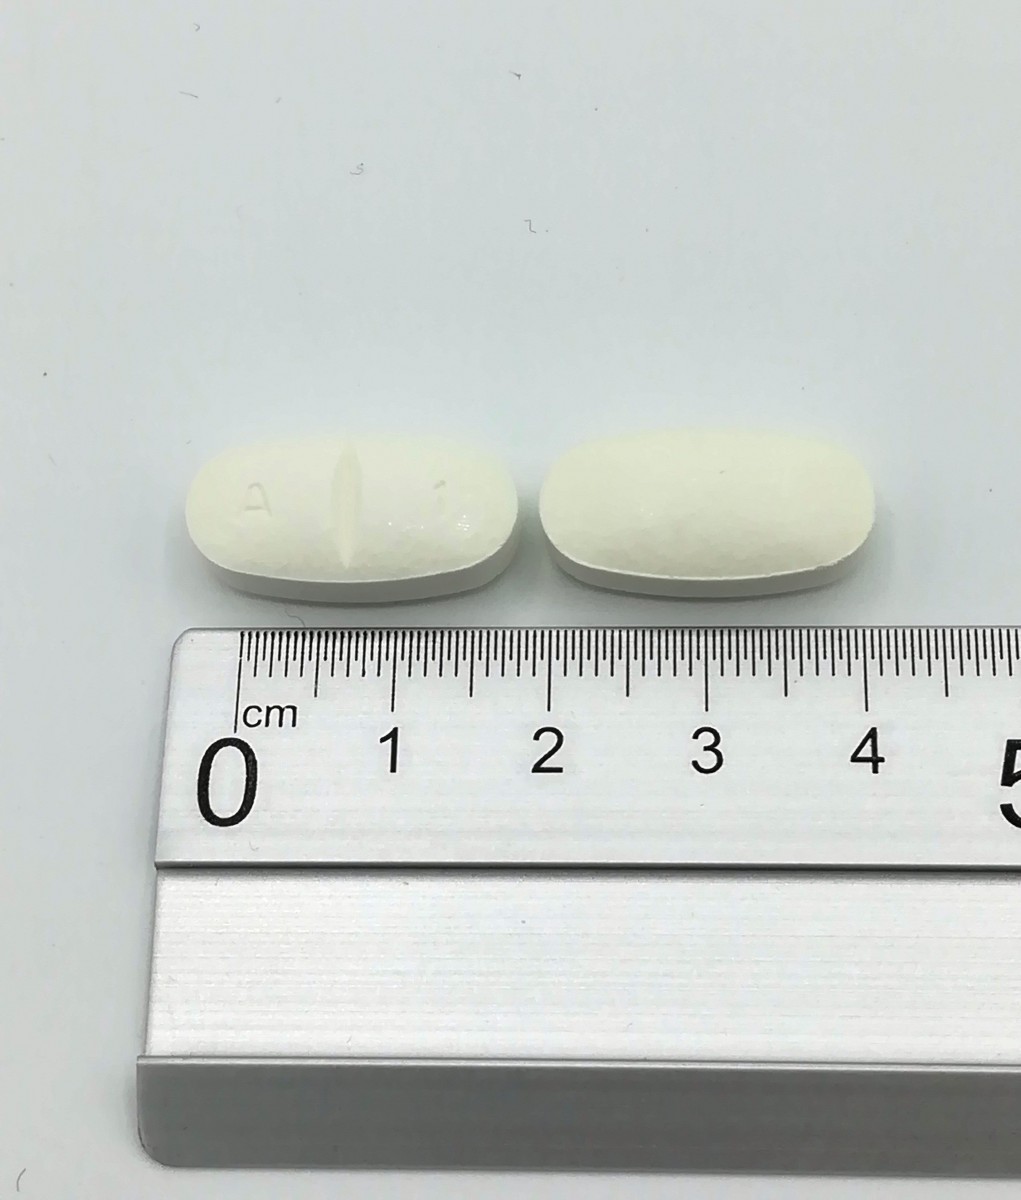 AMOXICILINA NORMON 1000 MG COMPRIMIDOS EFG  , 12 comprimidos fotografía de la forma farmacéutica.